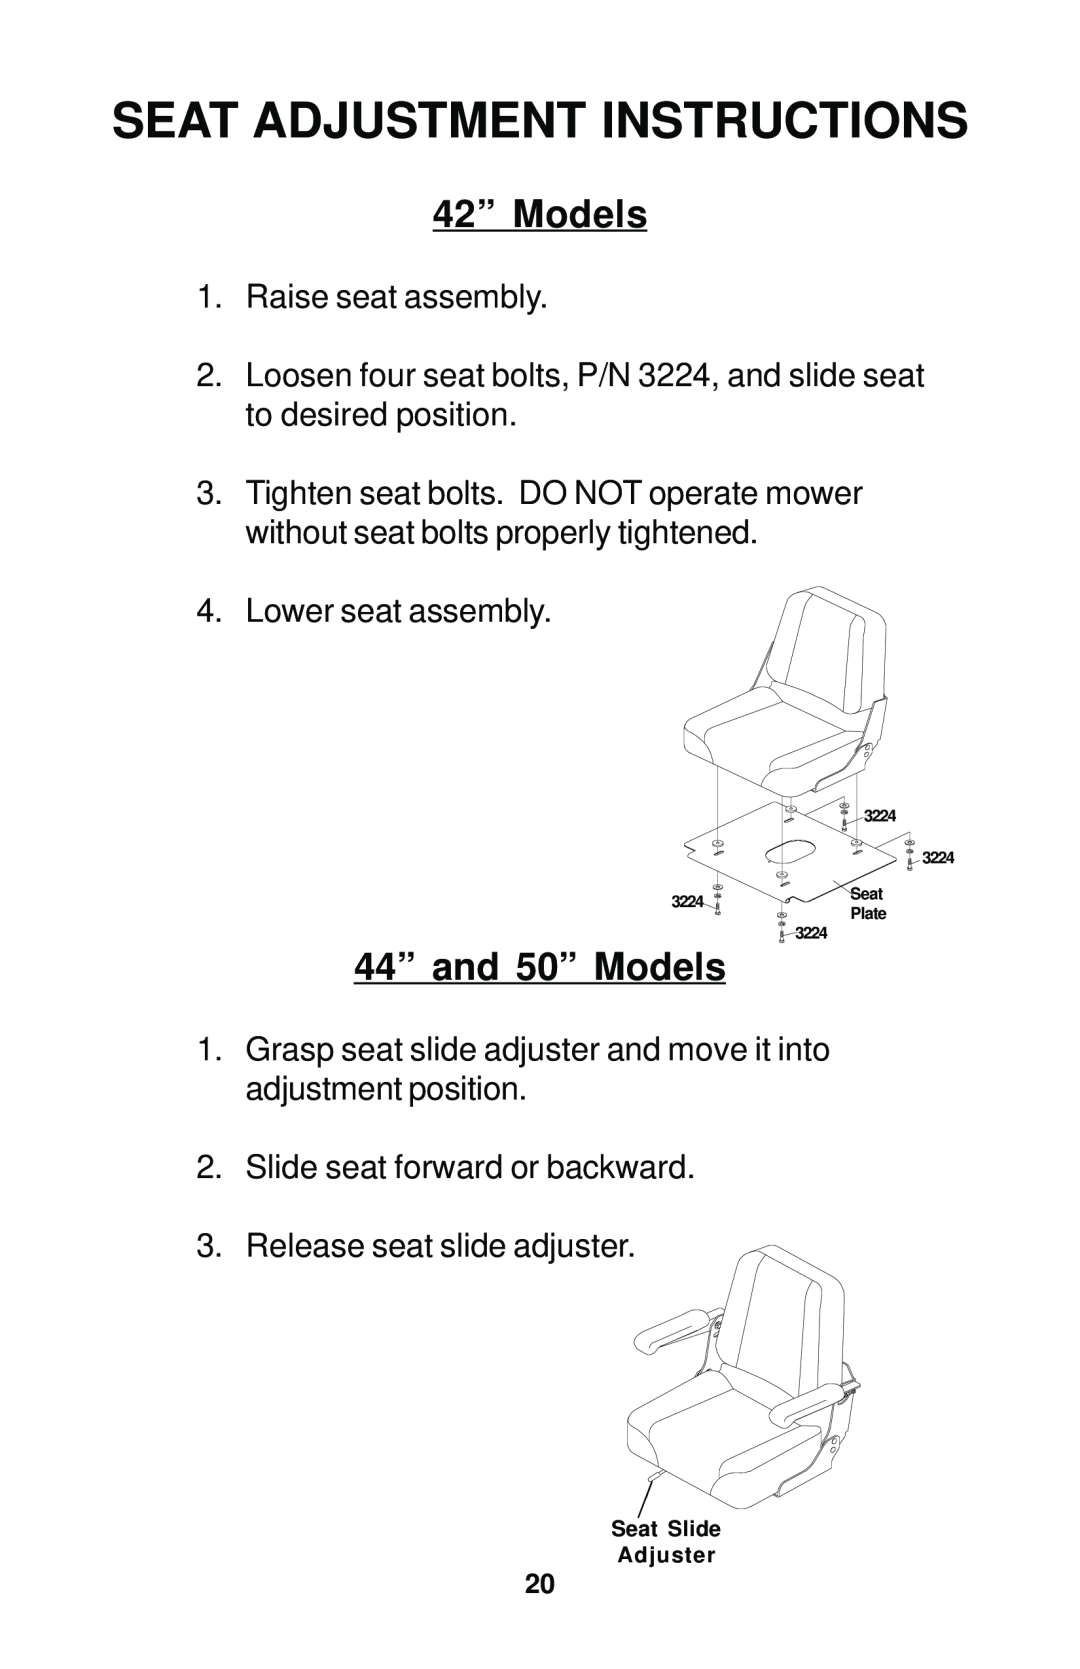 Dixon 42, 44, 50, 44 MAG, 50 MAG manual Seat Adjustment Instructions, 42” Models, 44” and 50” Models 